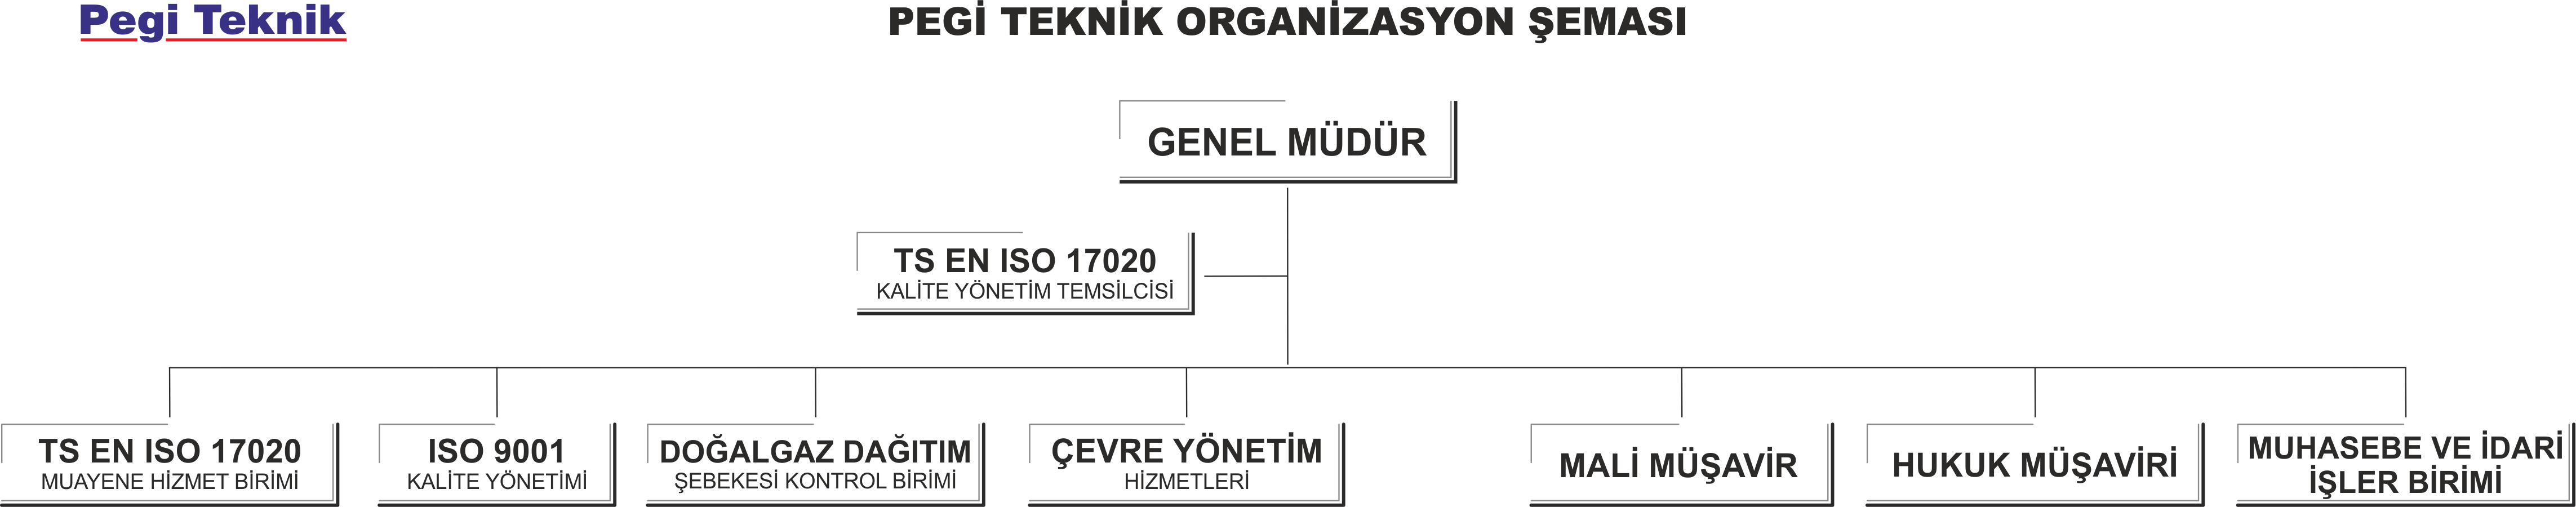 Pegi Teknik Organizasyon Şeması